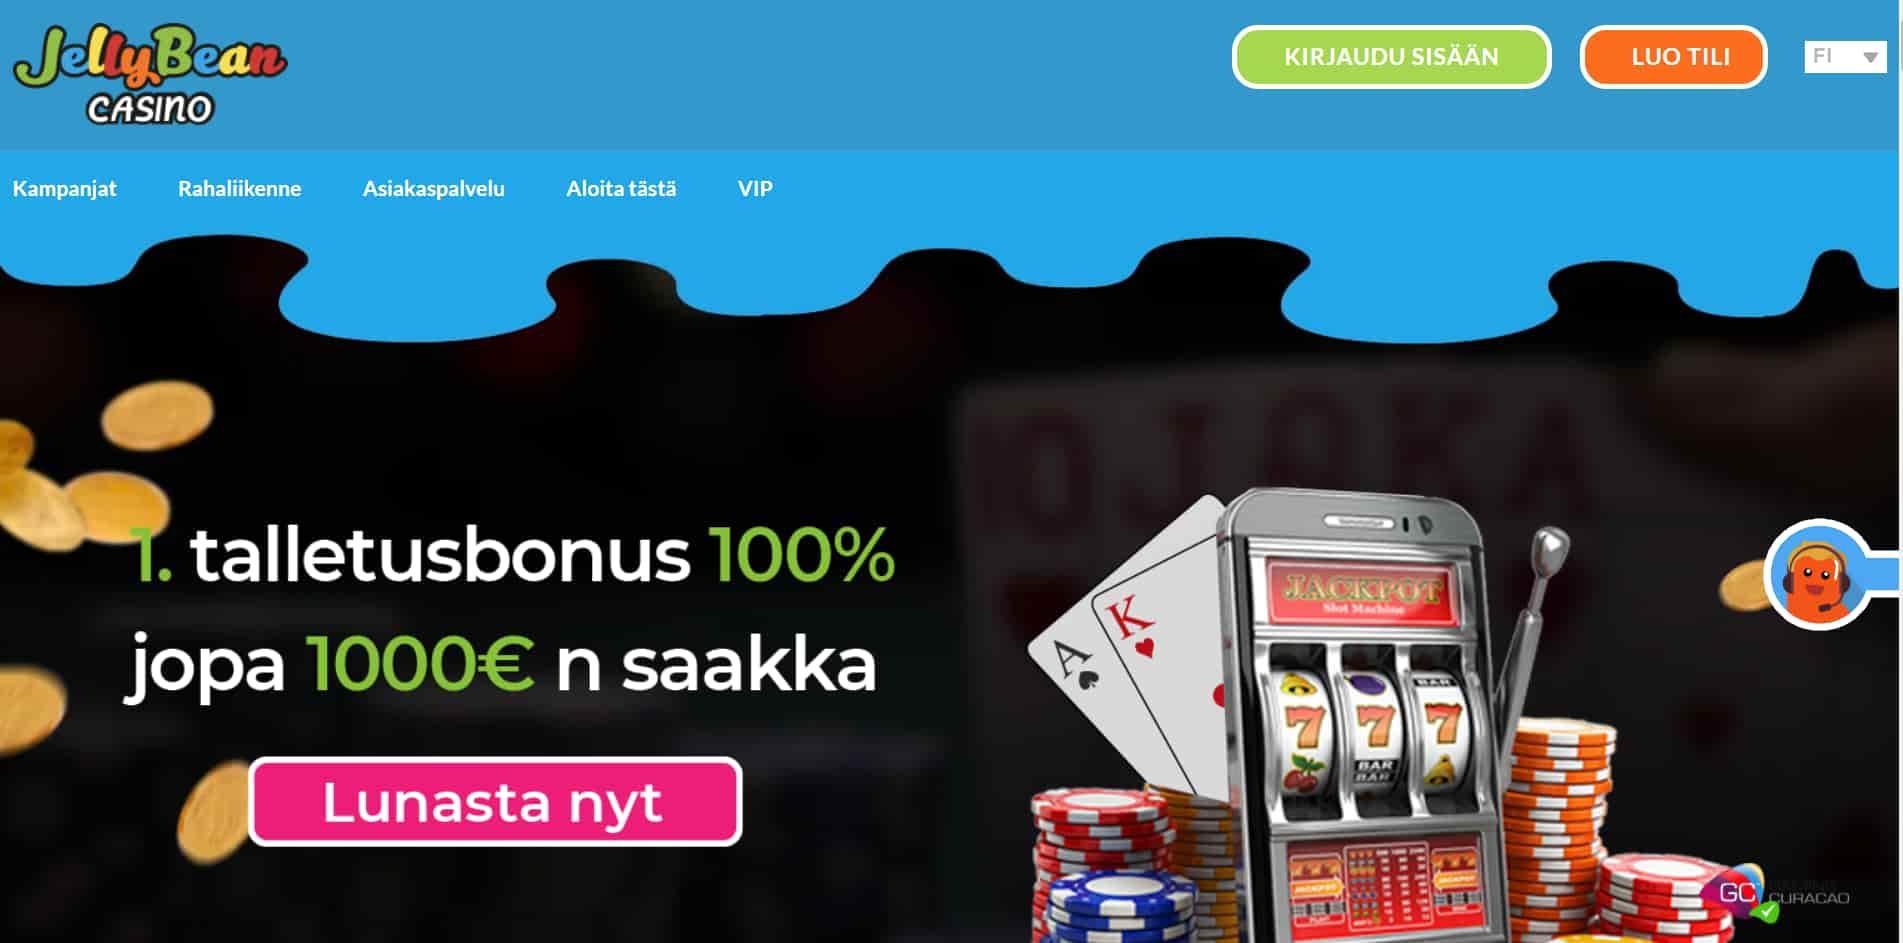 JellyBean casino homepage